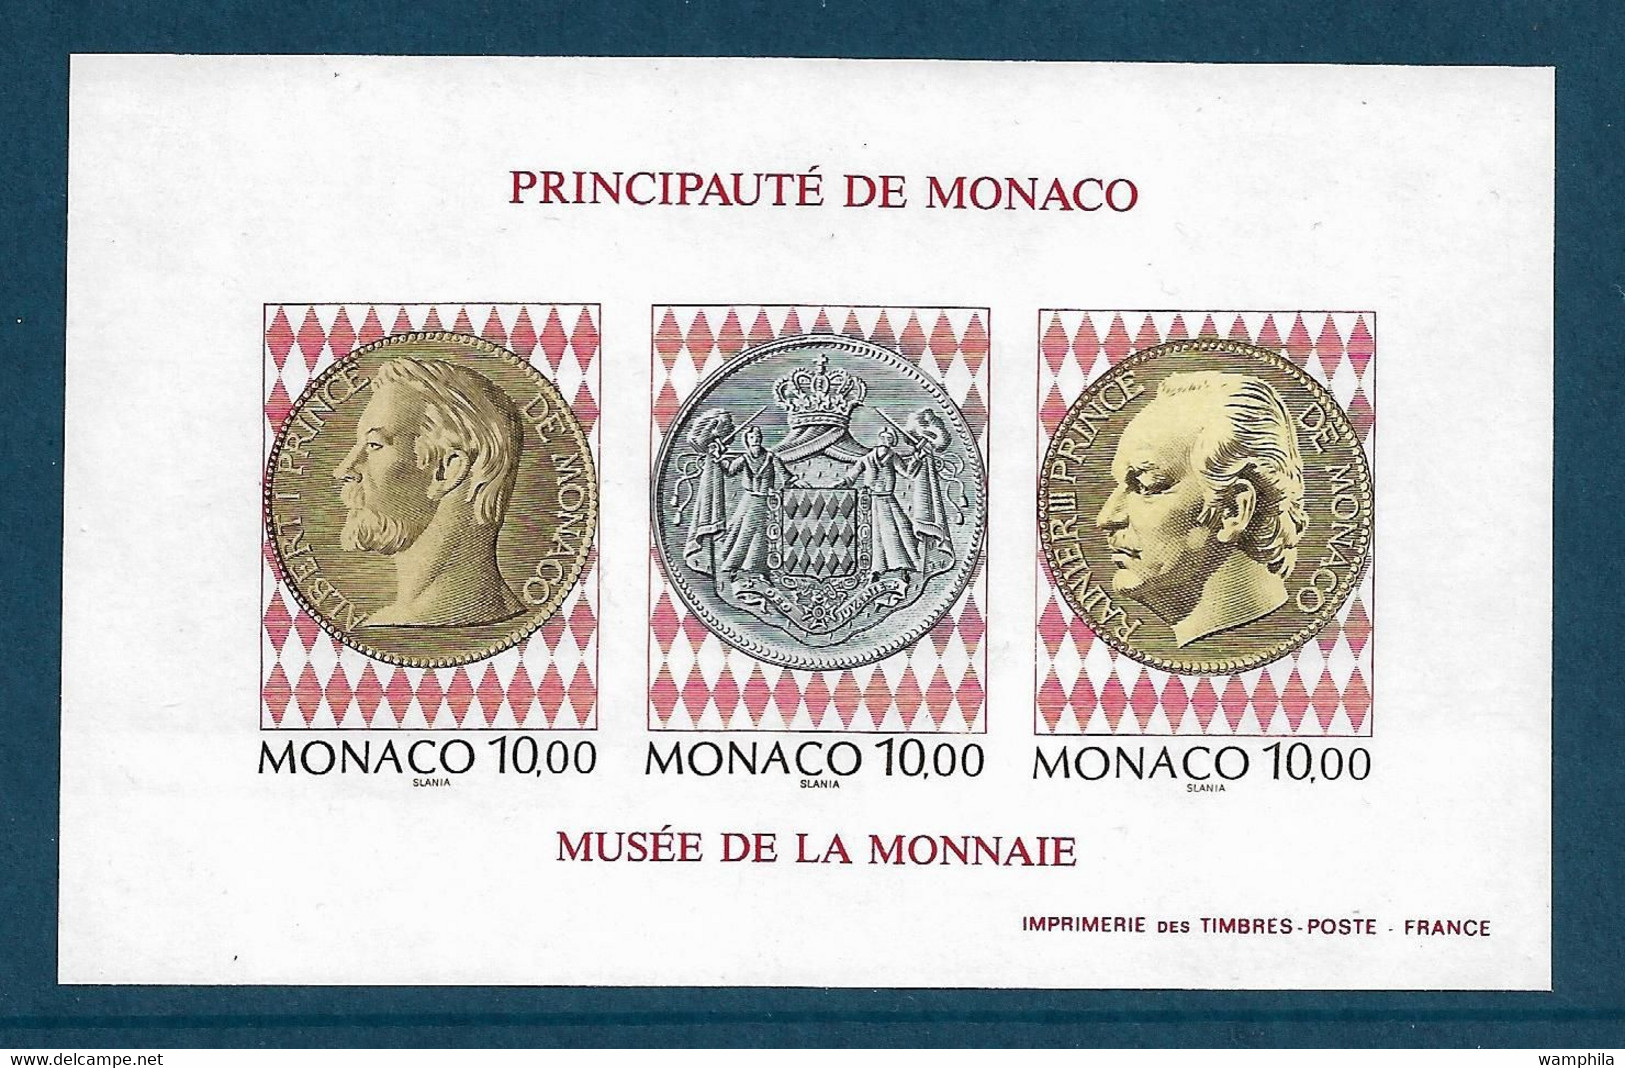 Monaco. Bloc Feuillet N°66a** Non Dentelé. Timbres Et Monnaies. Cote 220€. - Münzen